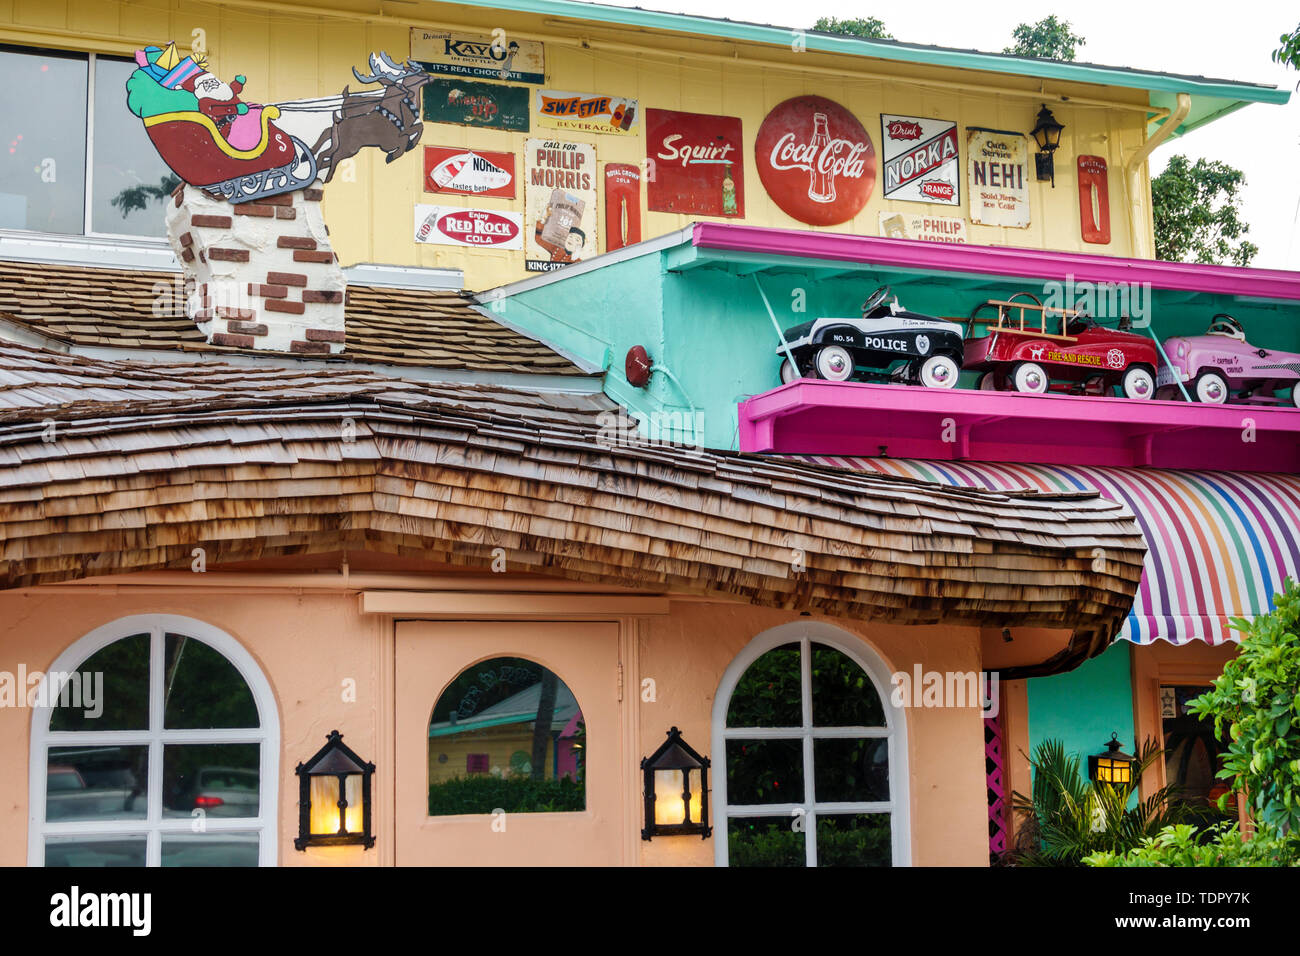 Captiva Island Florida, Bubble Room, multi-tema, ristorante ristoranti, cibo, caffè, ingresso esterno, arredamento bizzarri, esterno, FL190507020 Foto Stock